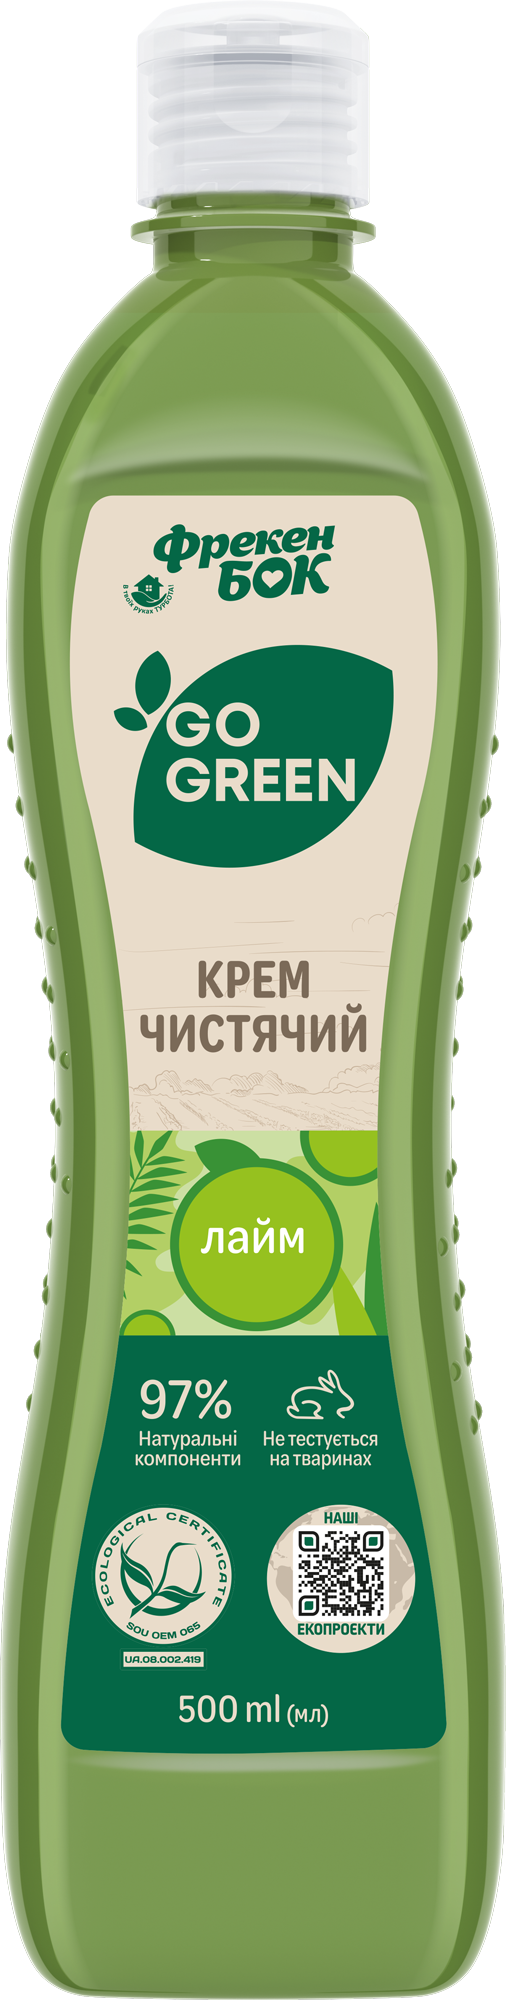 Универсальный чистящий крем Фрекен Бок Go Green Лайм, 500 мл - фото 1